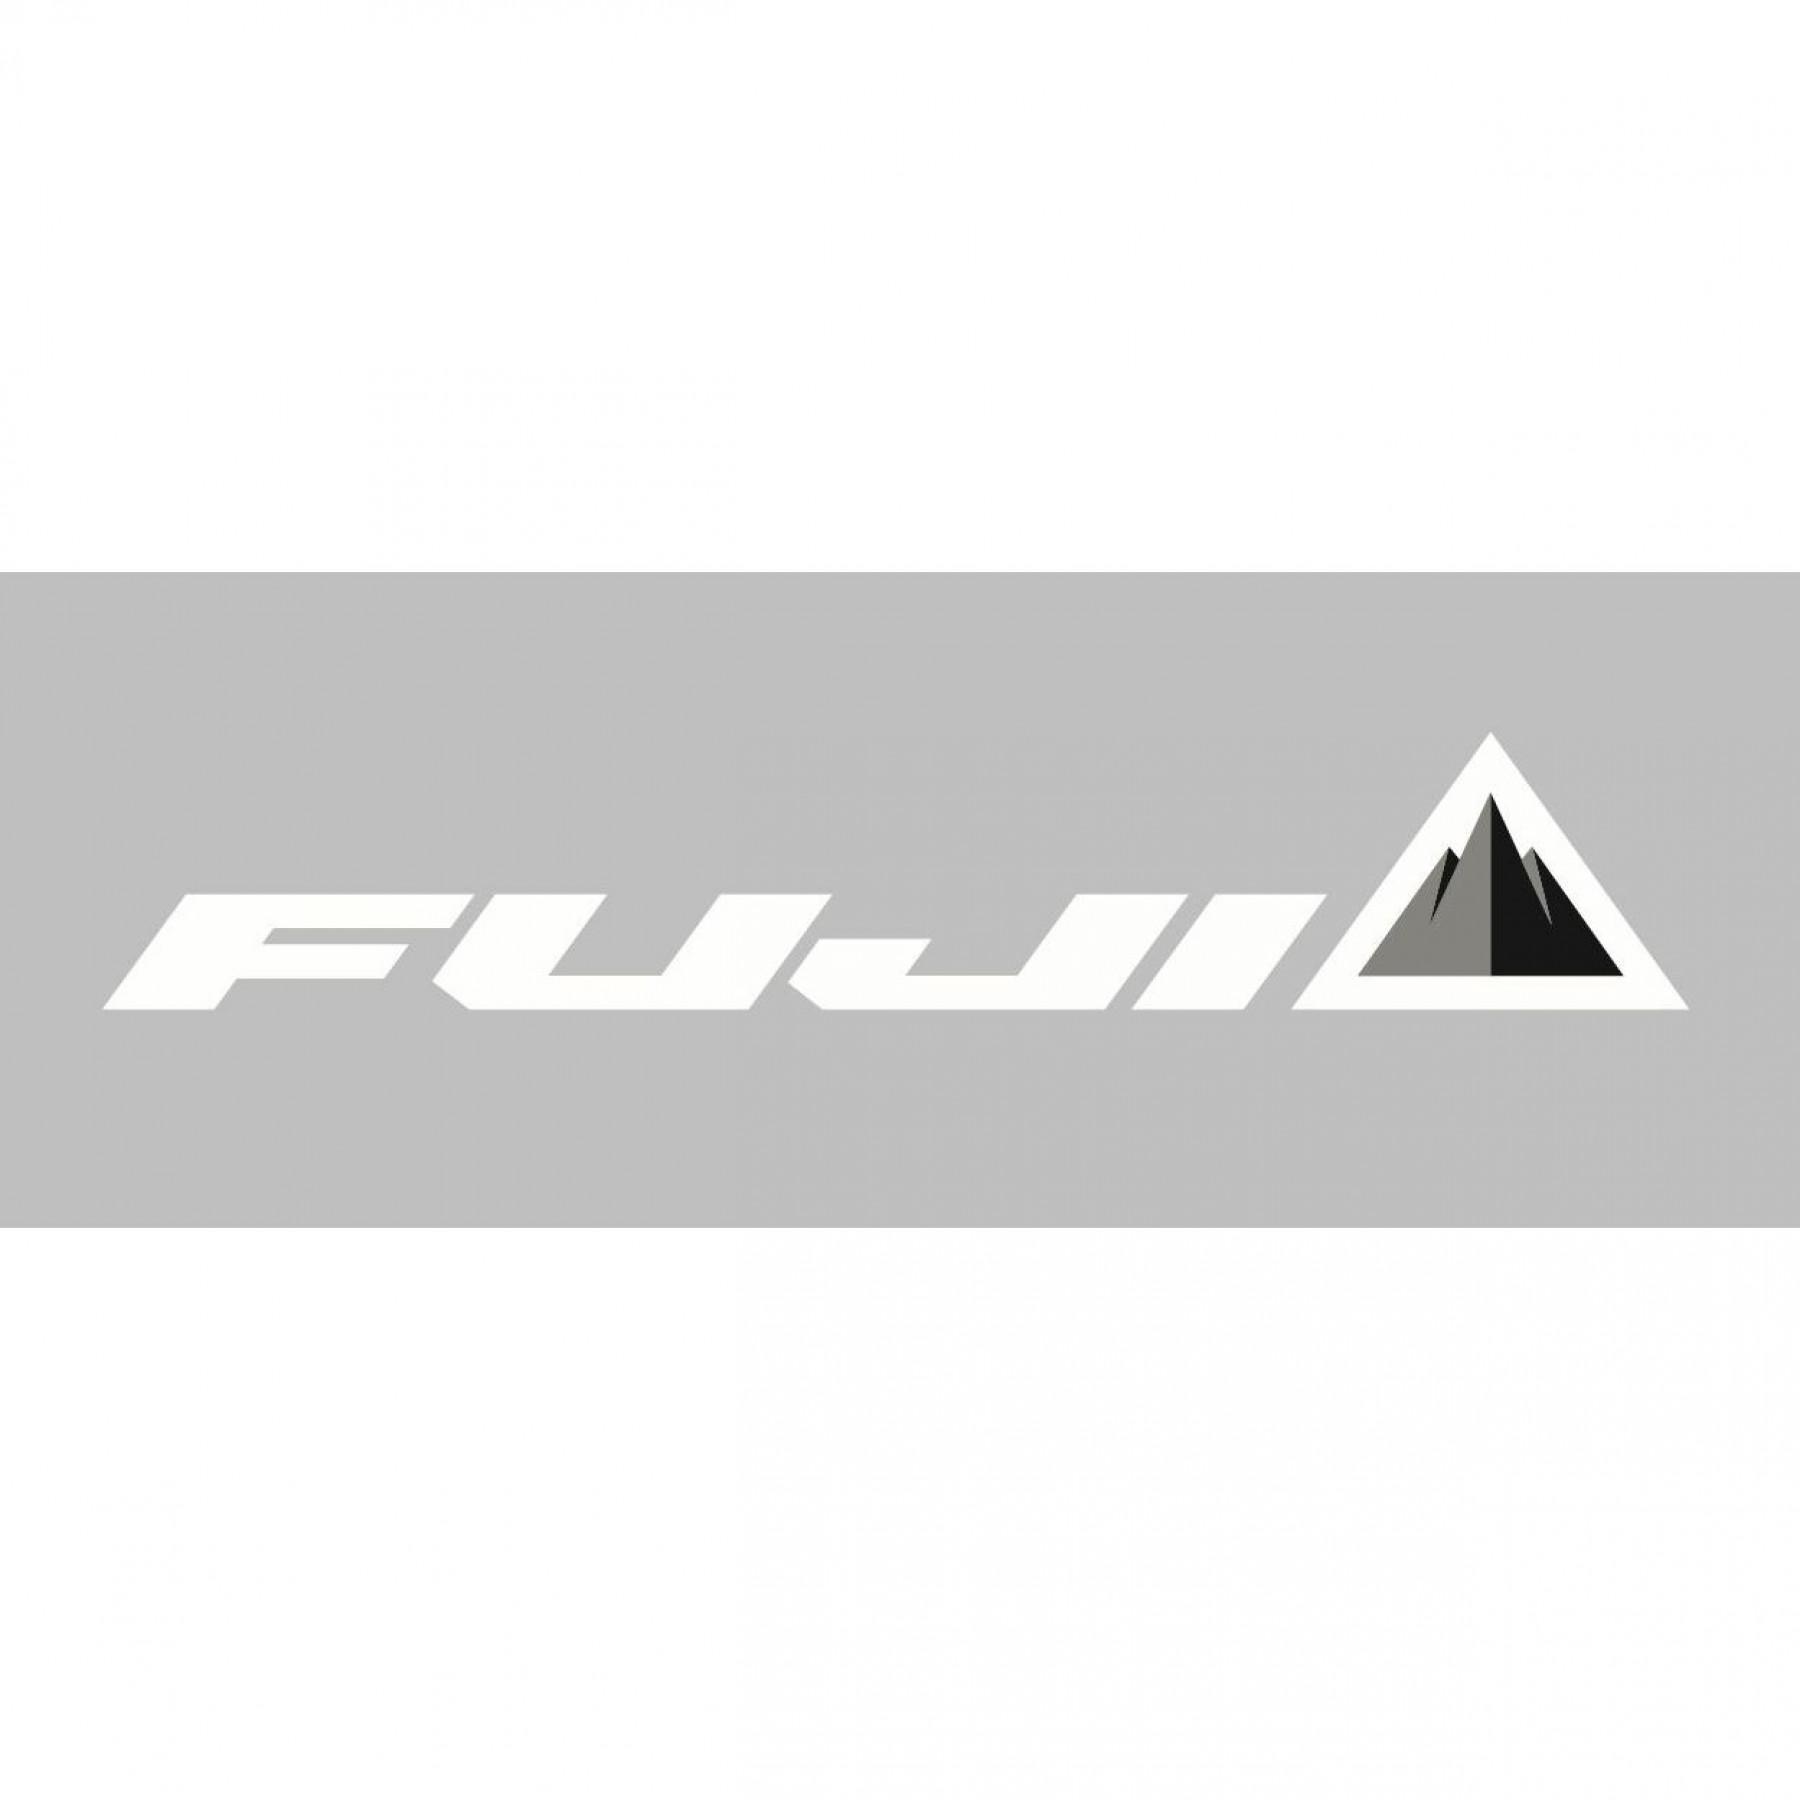 Window sticker Fuji